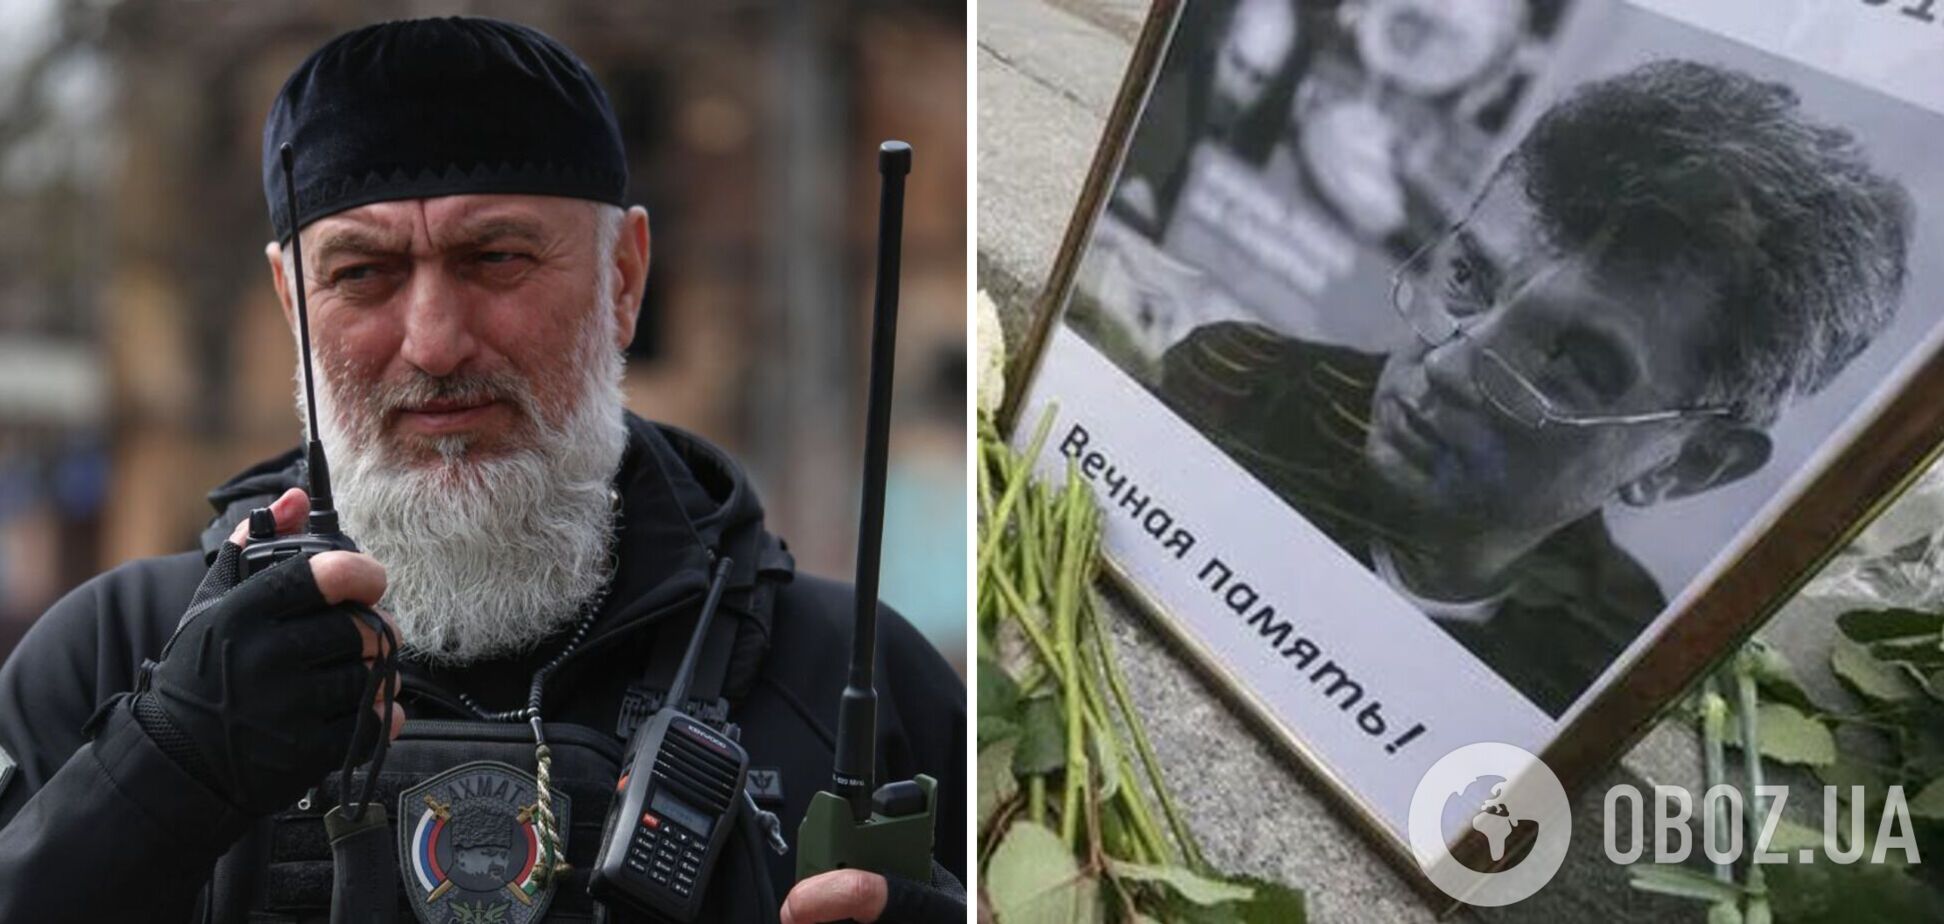 Путин присвоил звание героя России Адаму Делимханову, которого называют организатором убийства Немцова